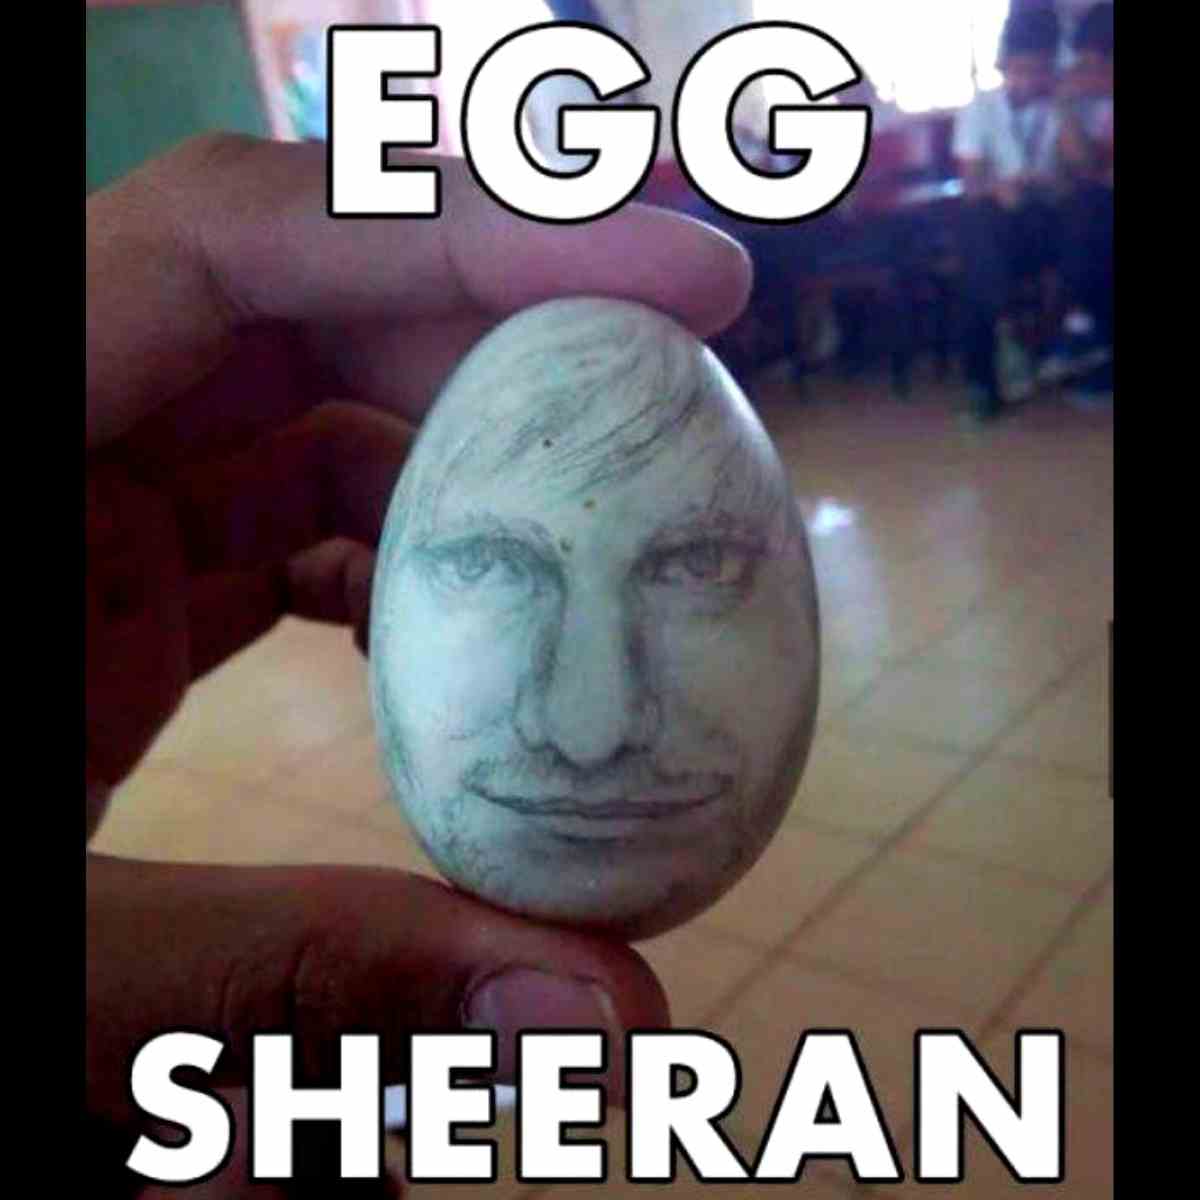 egg-sheeran-meme.jpg